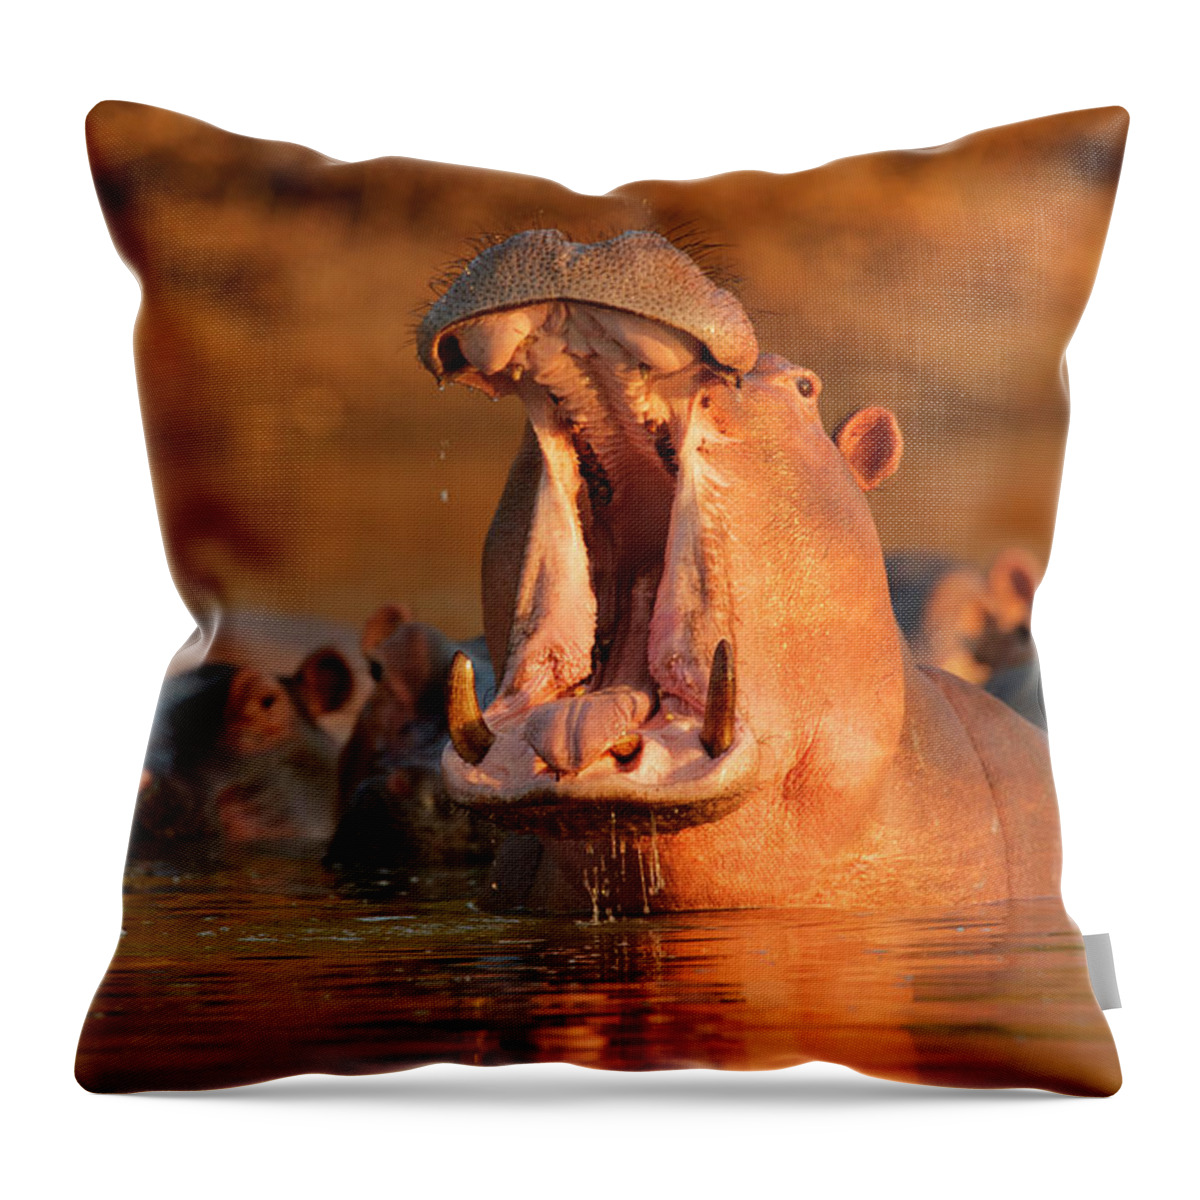 Hippopotamus Throw Pillow featuring the photograph Hippopotamus Hippopotamus Amphibius by David Fettes